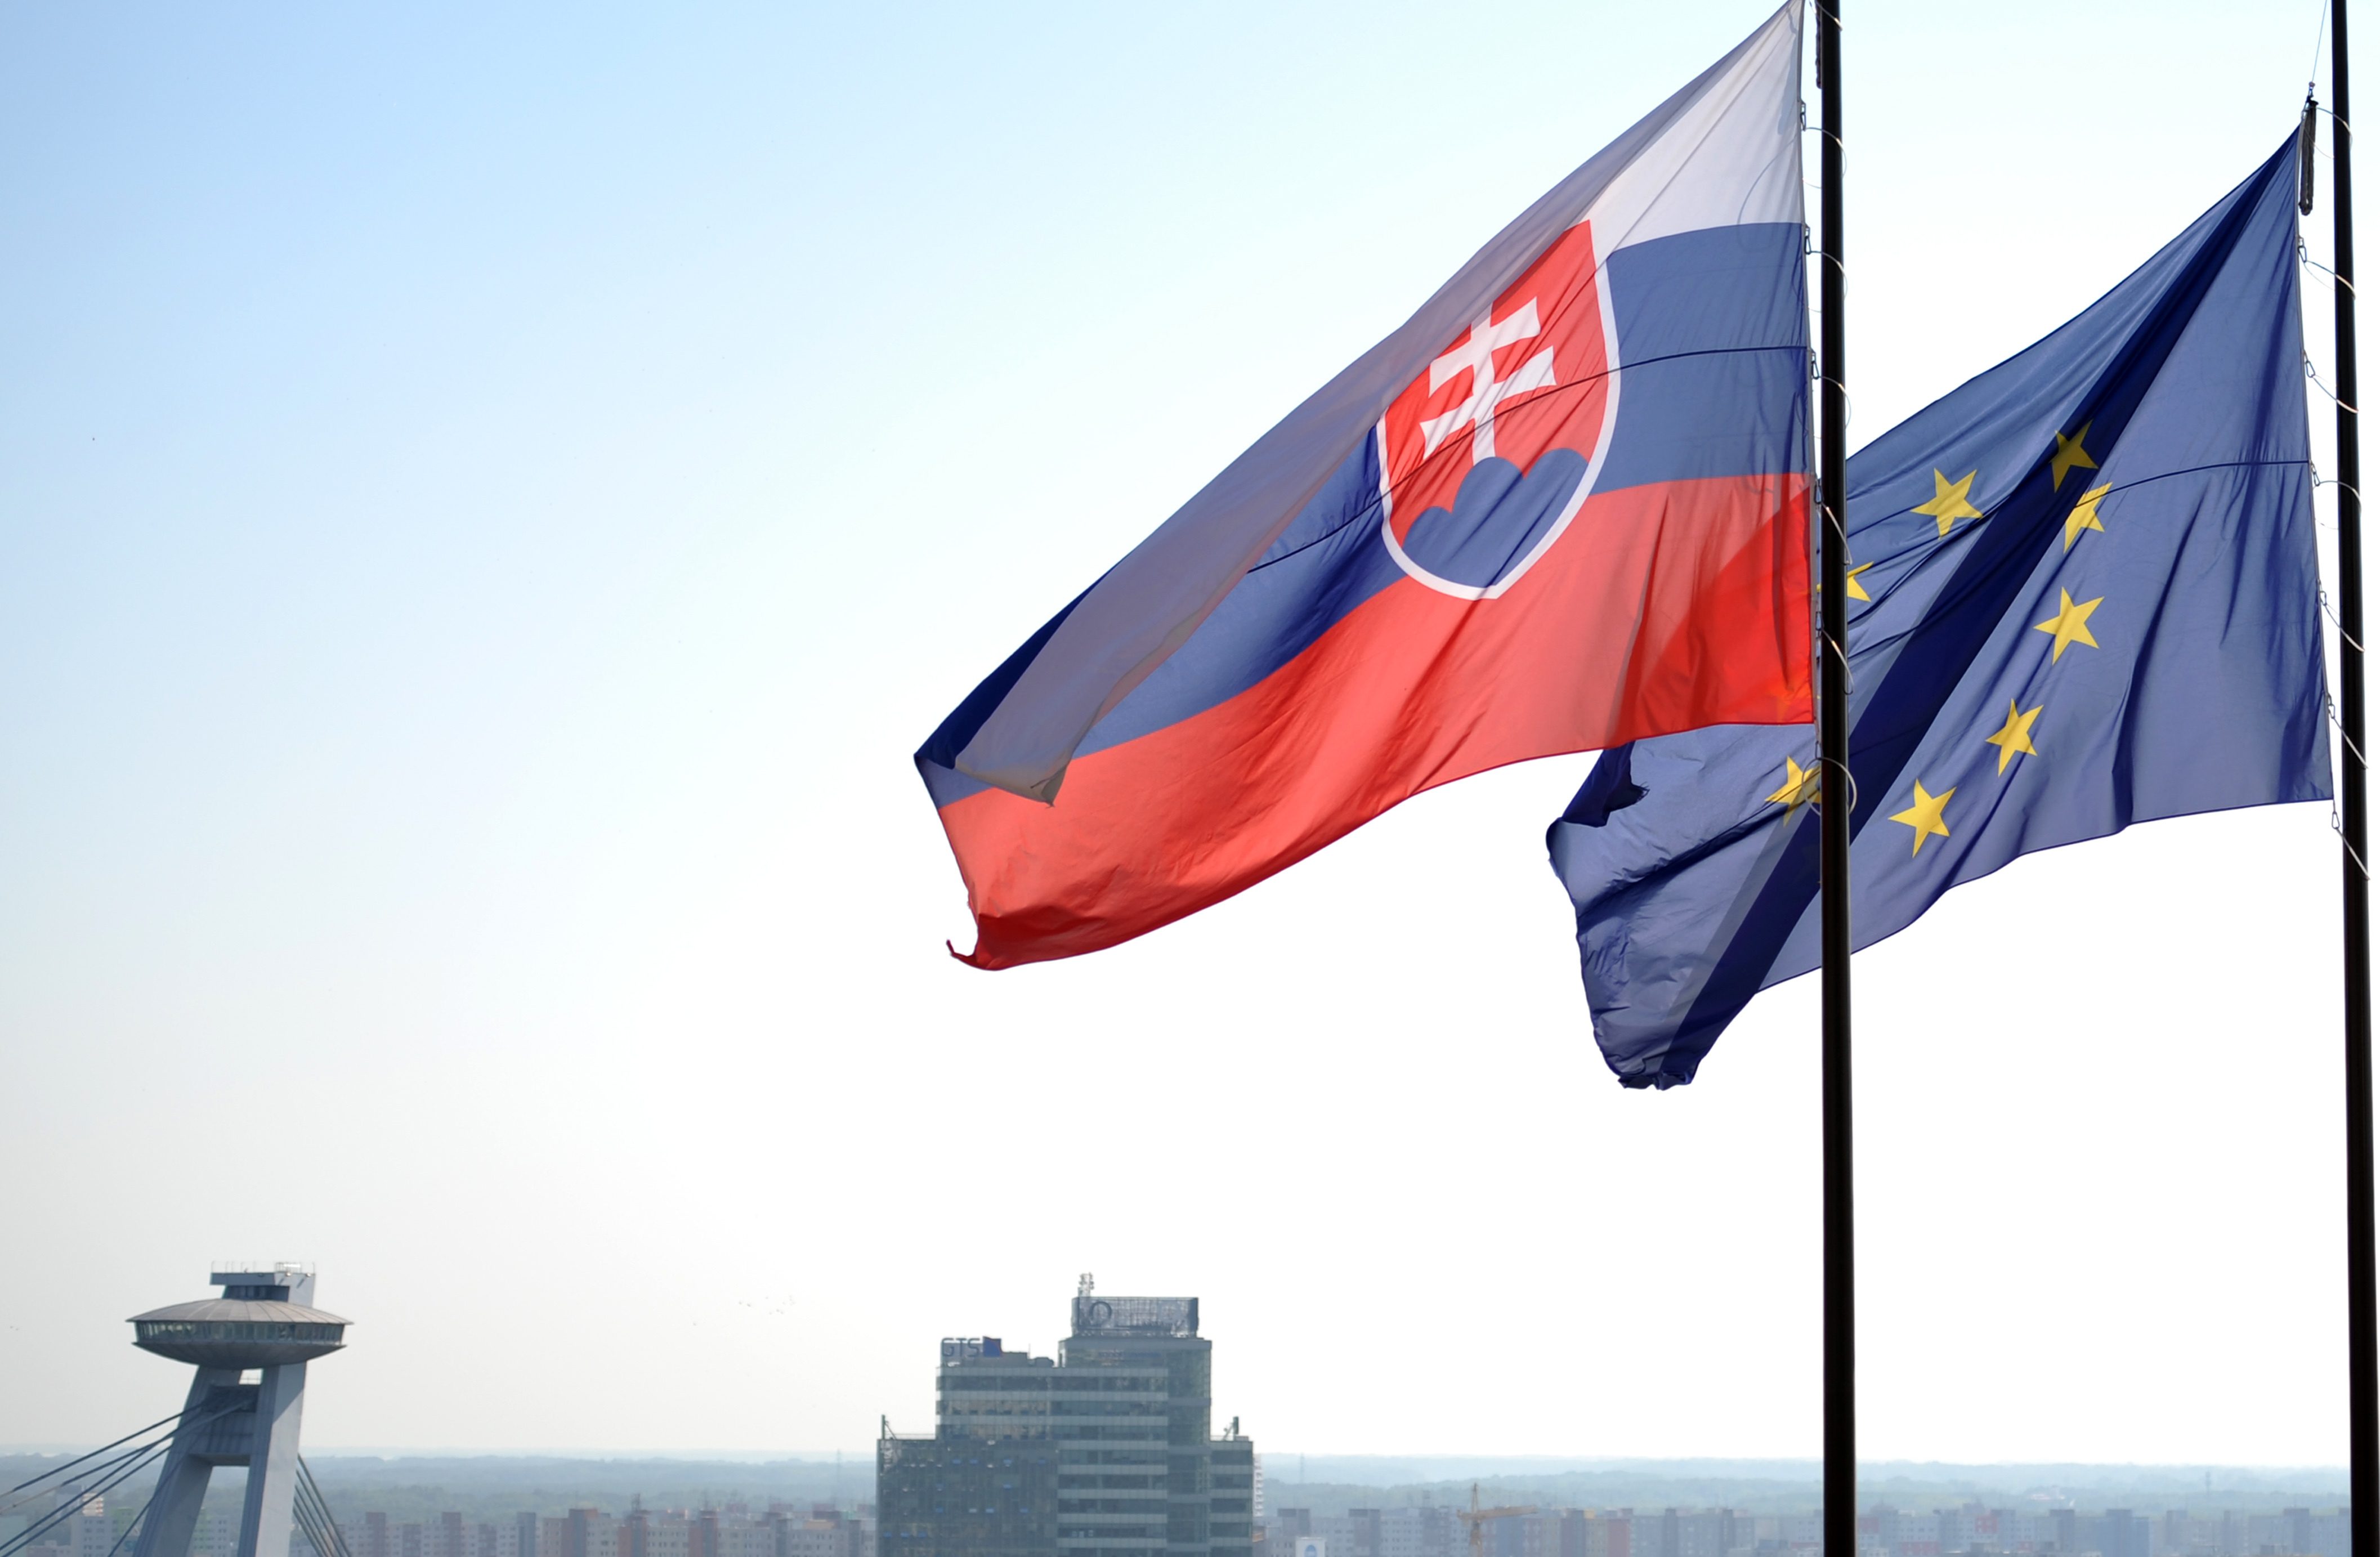 Die Flagge der EU und die slowakische Flagge